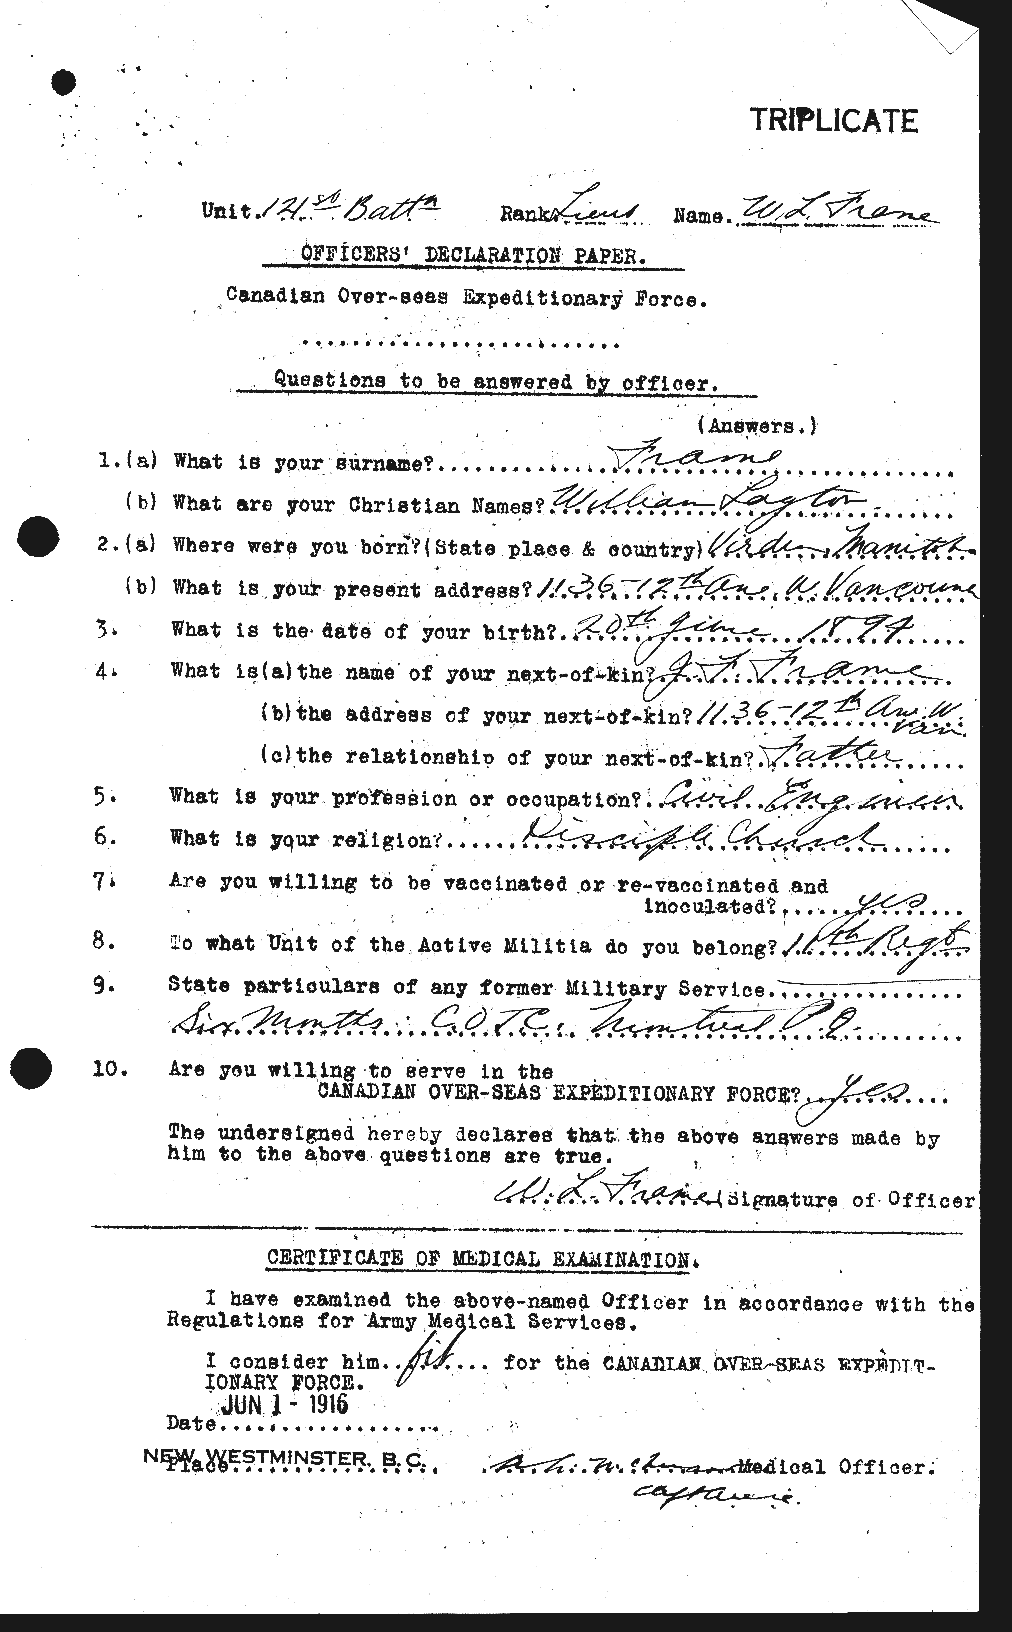 Dossiers du Personnel de la Première Guerre mondiale - CEC 335971a